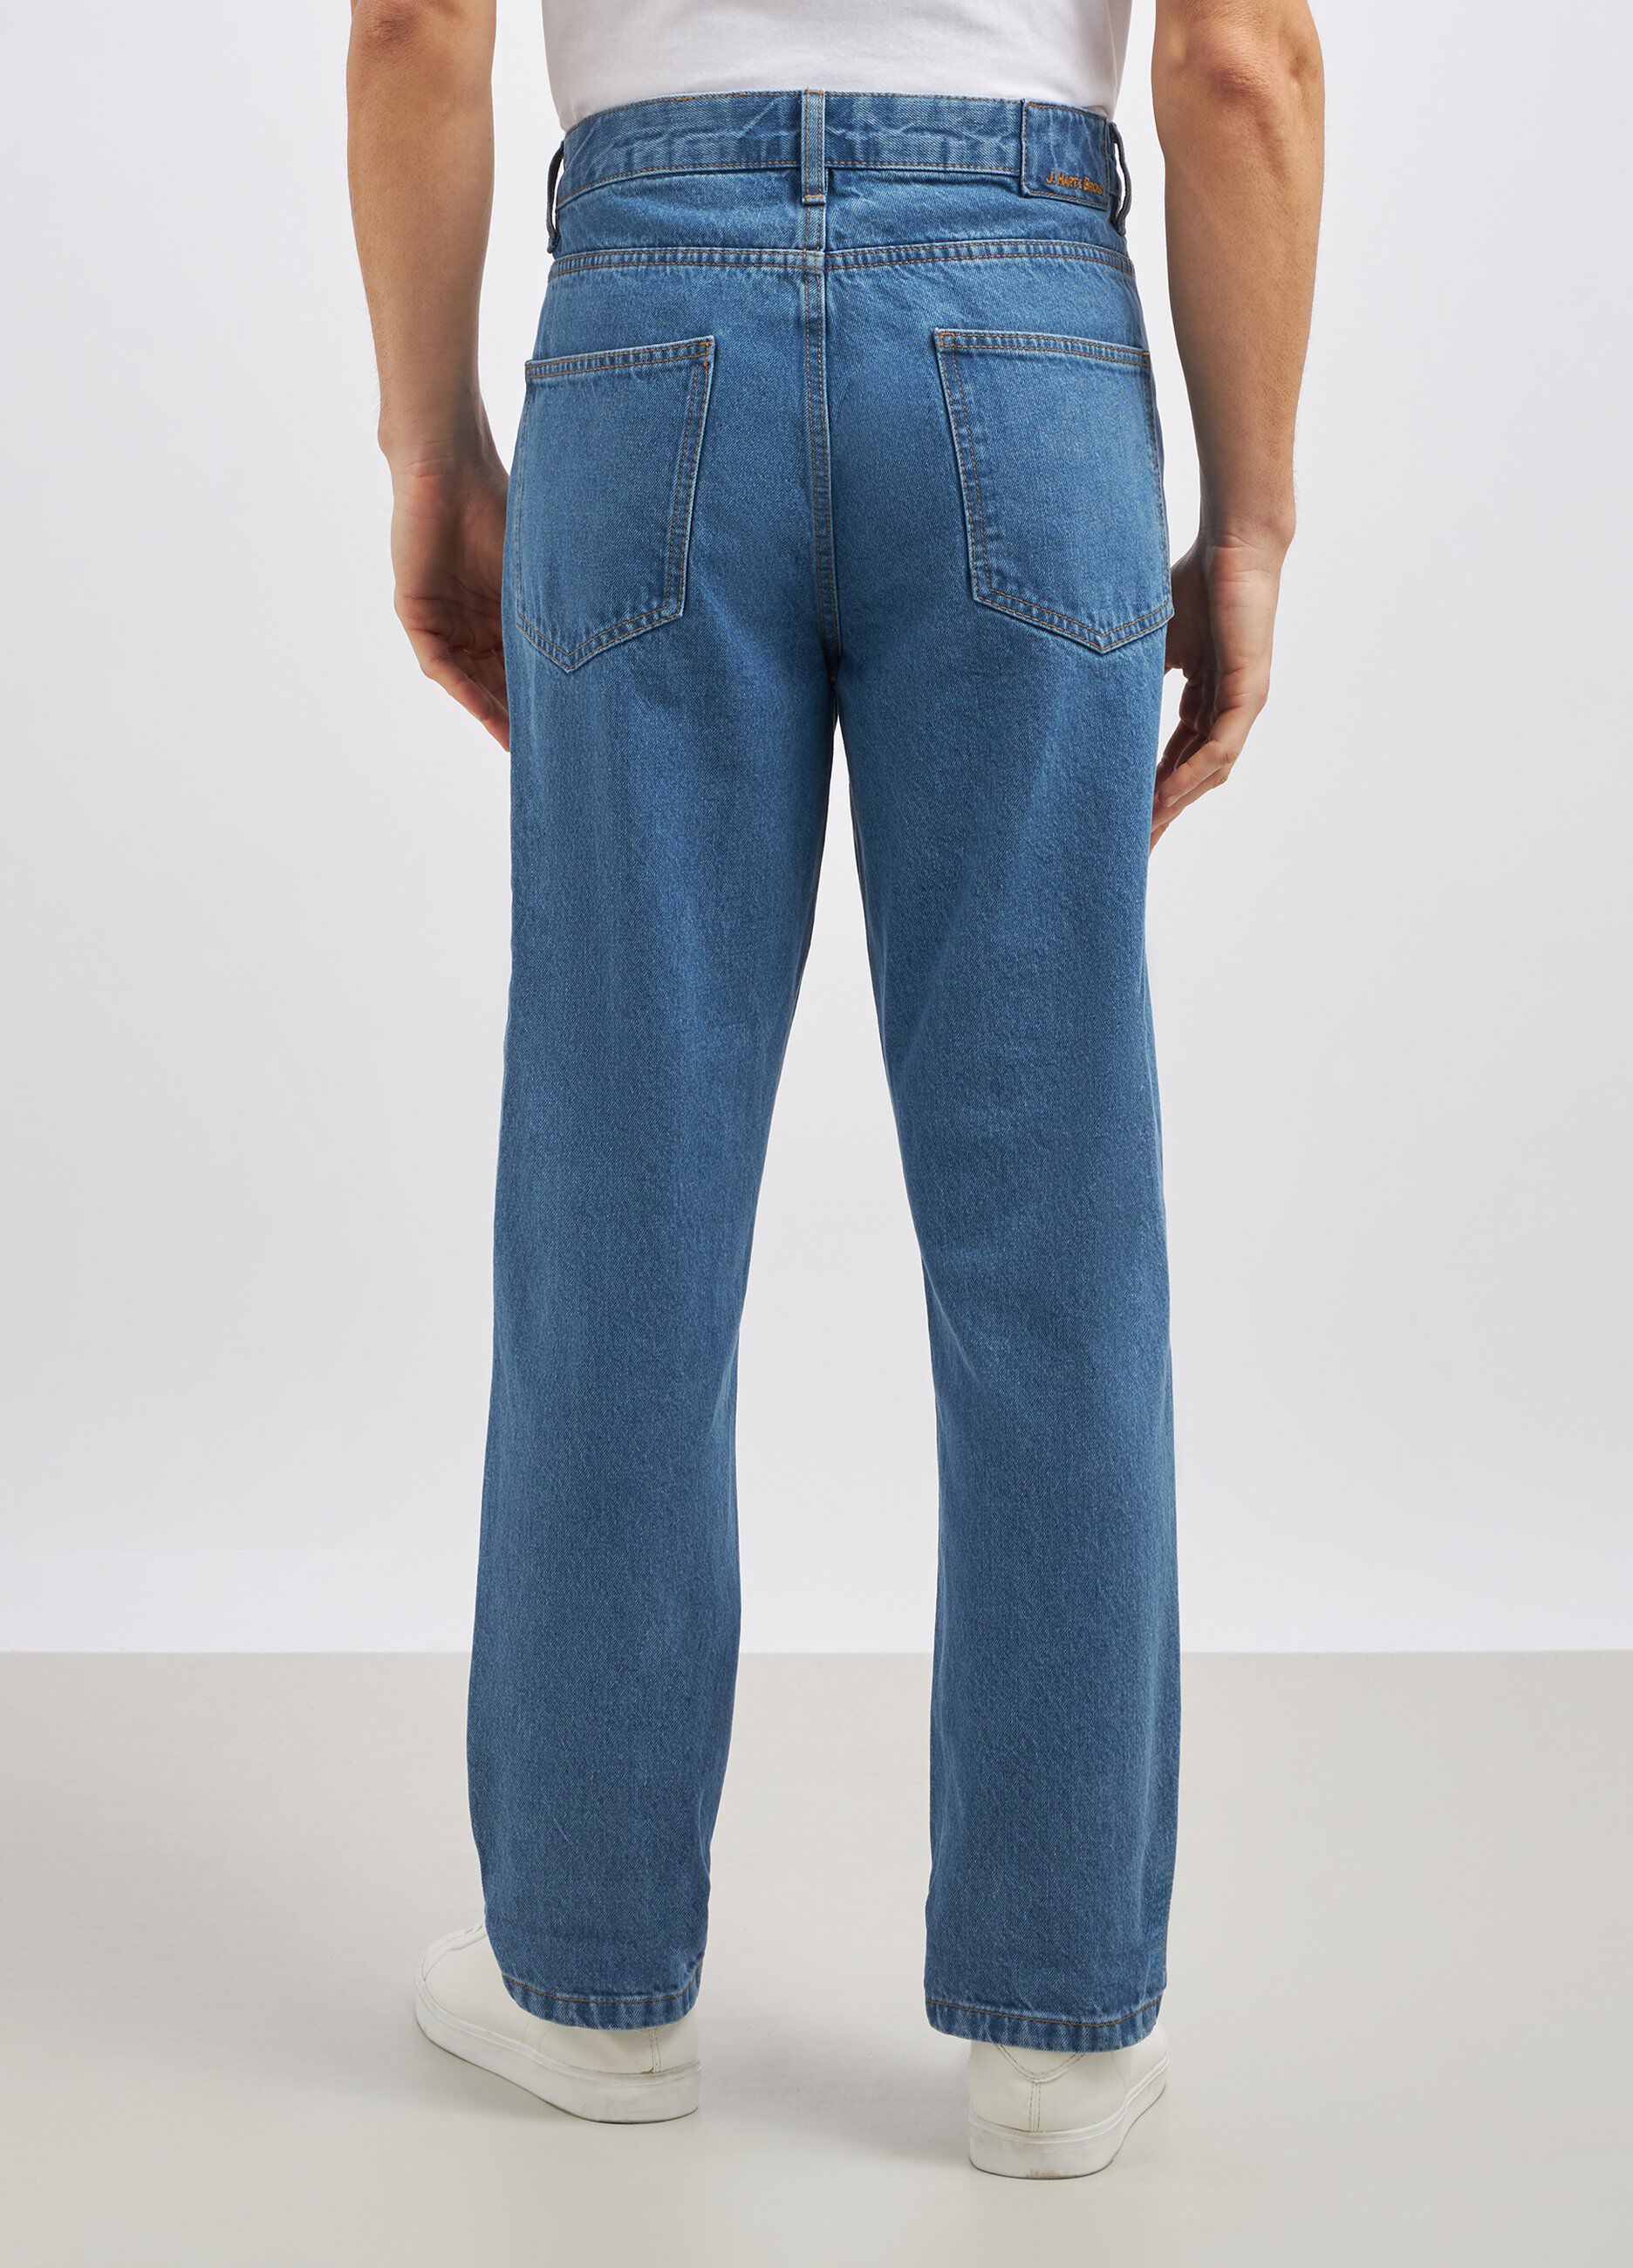 Jeans straight in puro cotone uomo_2